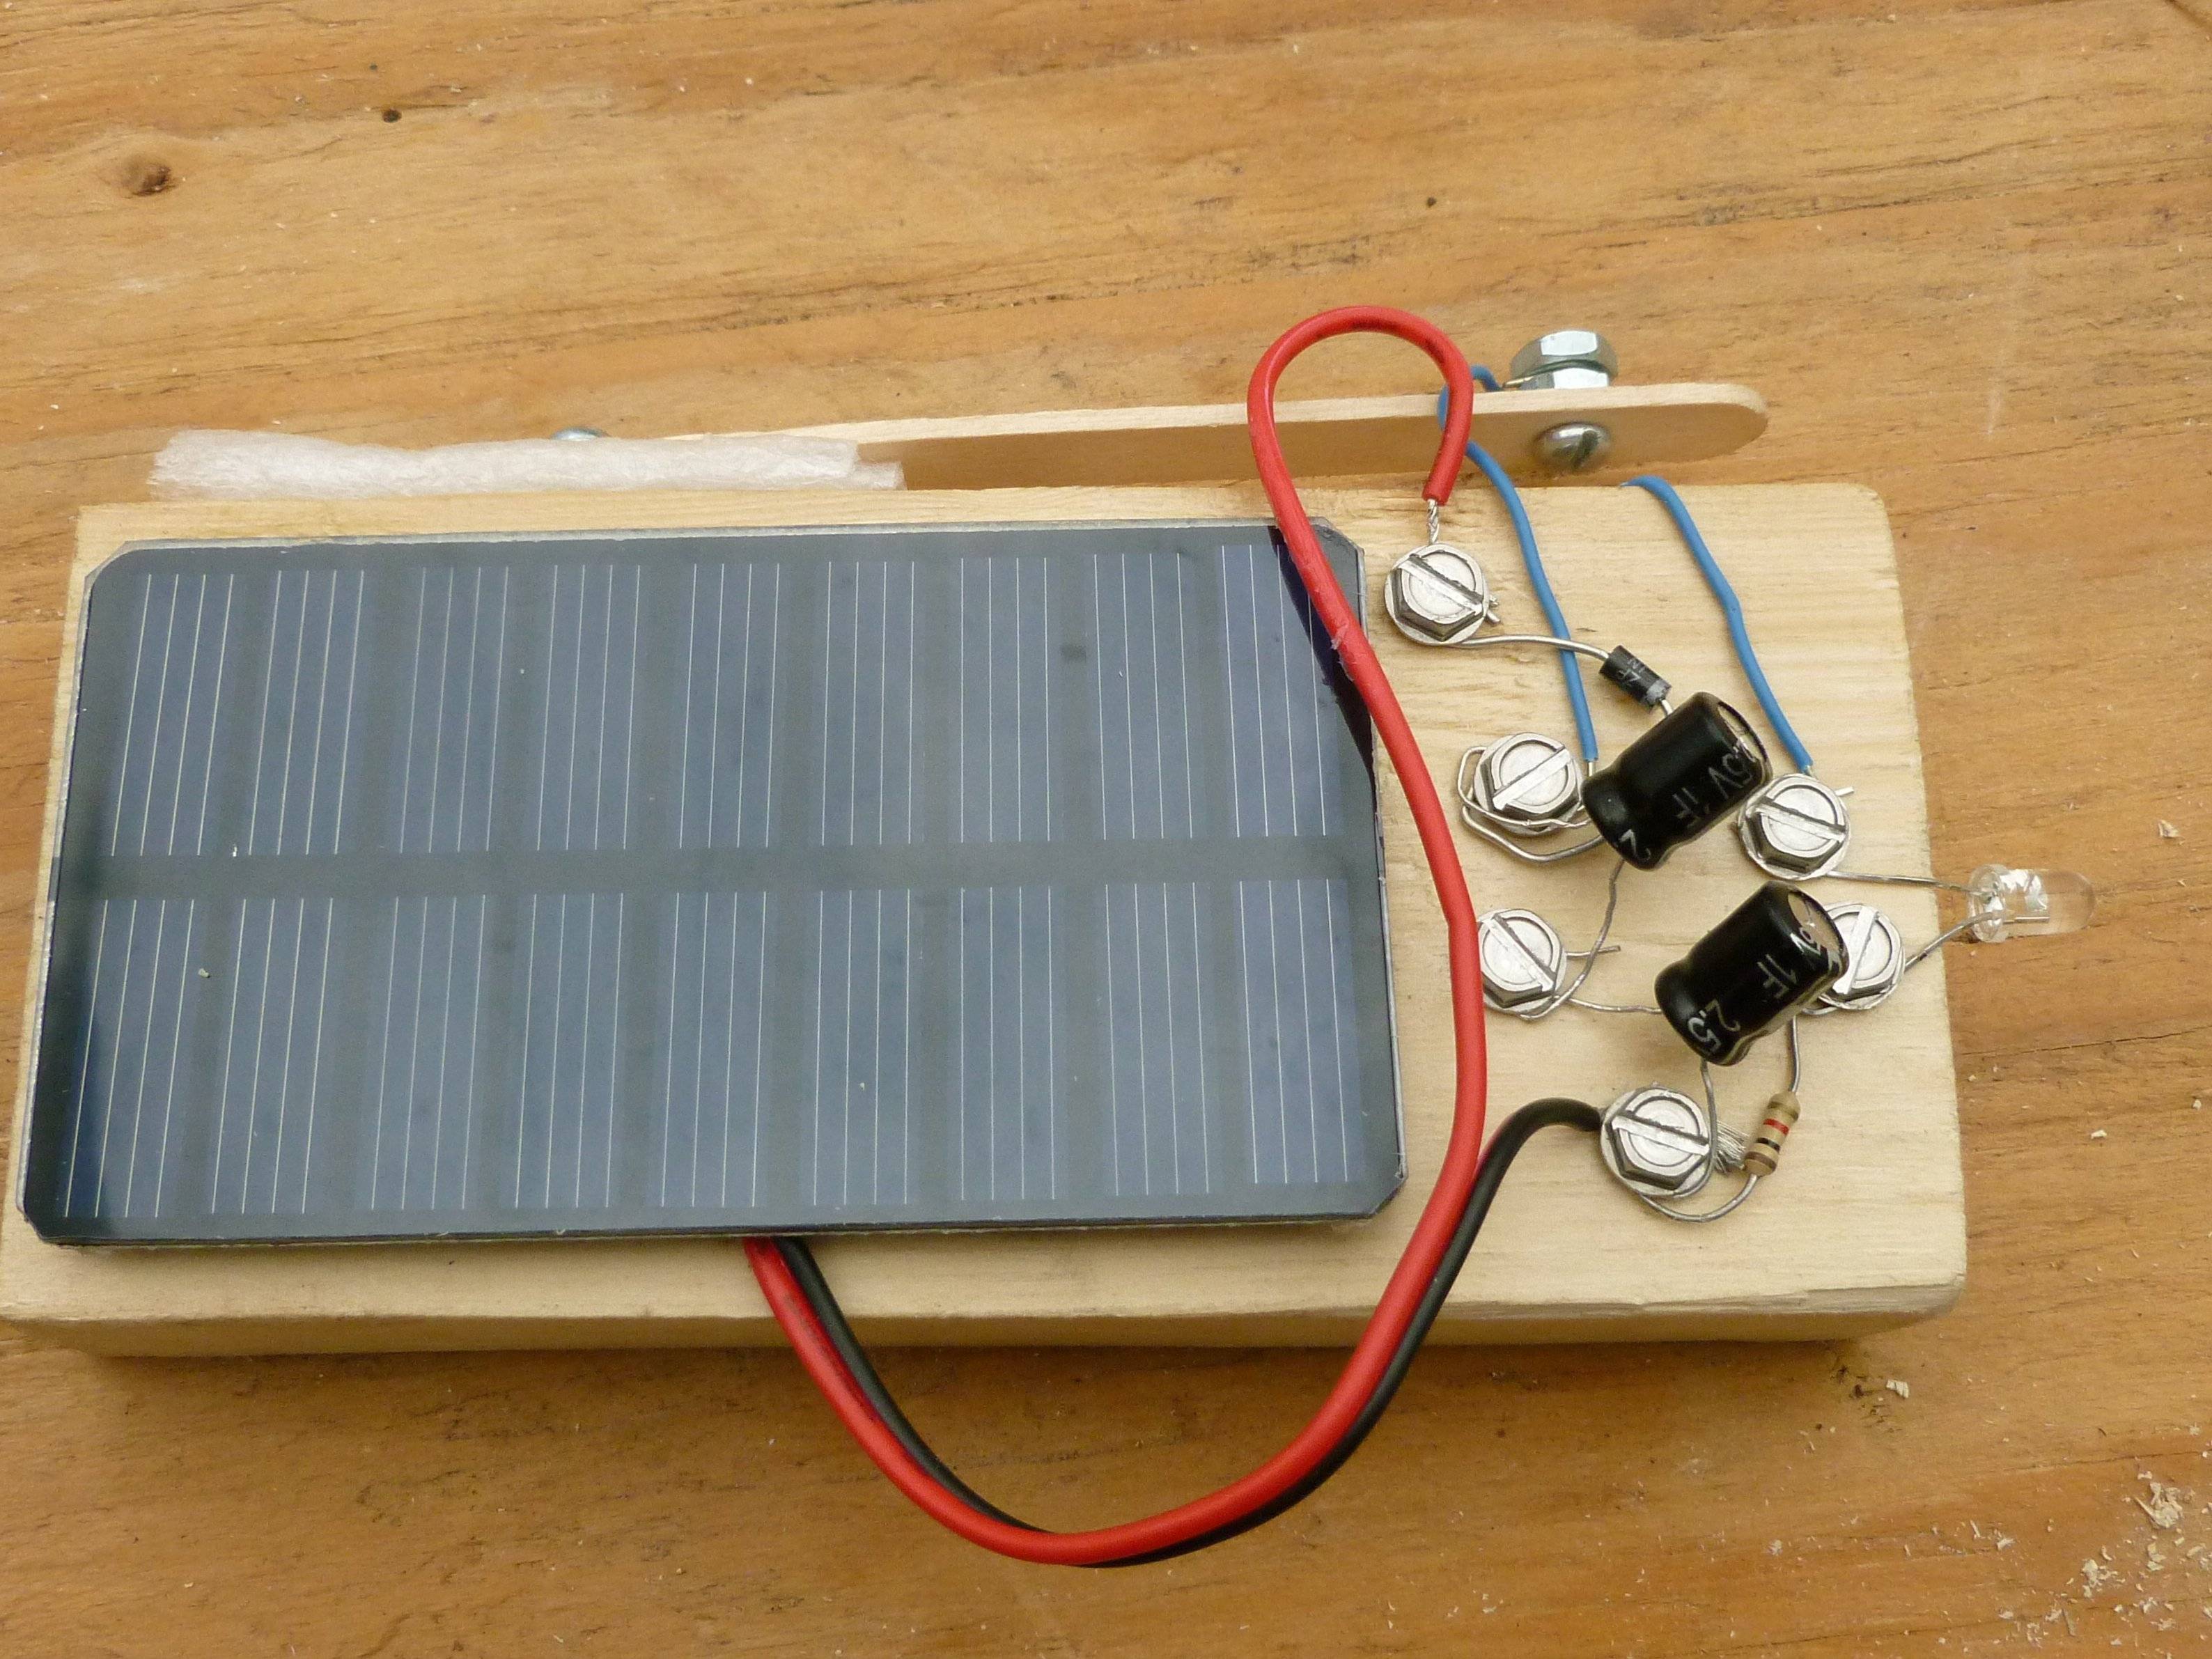 Солнечная батарея своими руками. самодельная конструкция транзисторной солнечной батареи